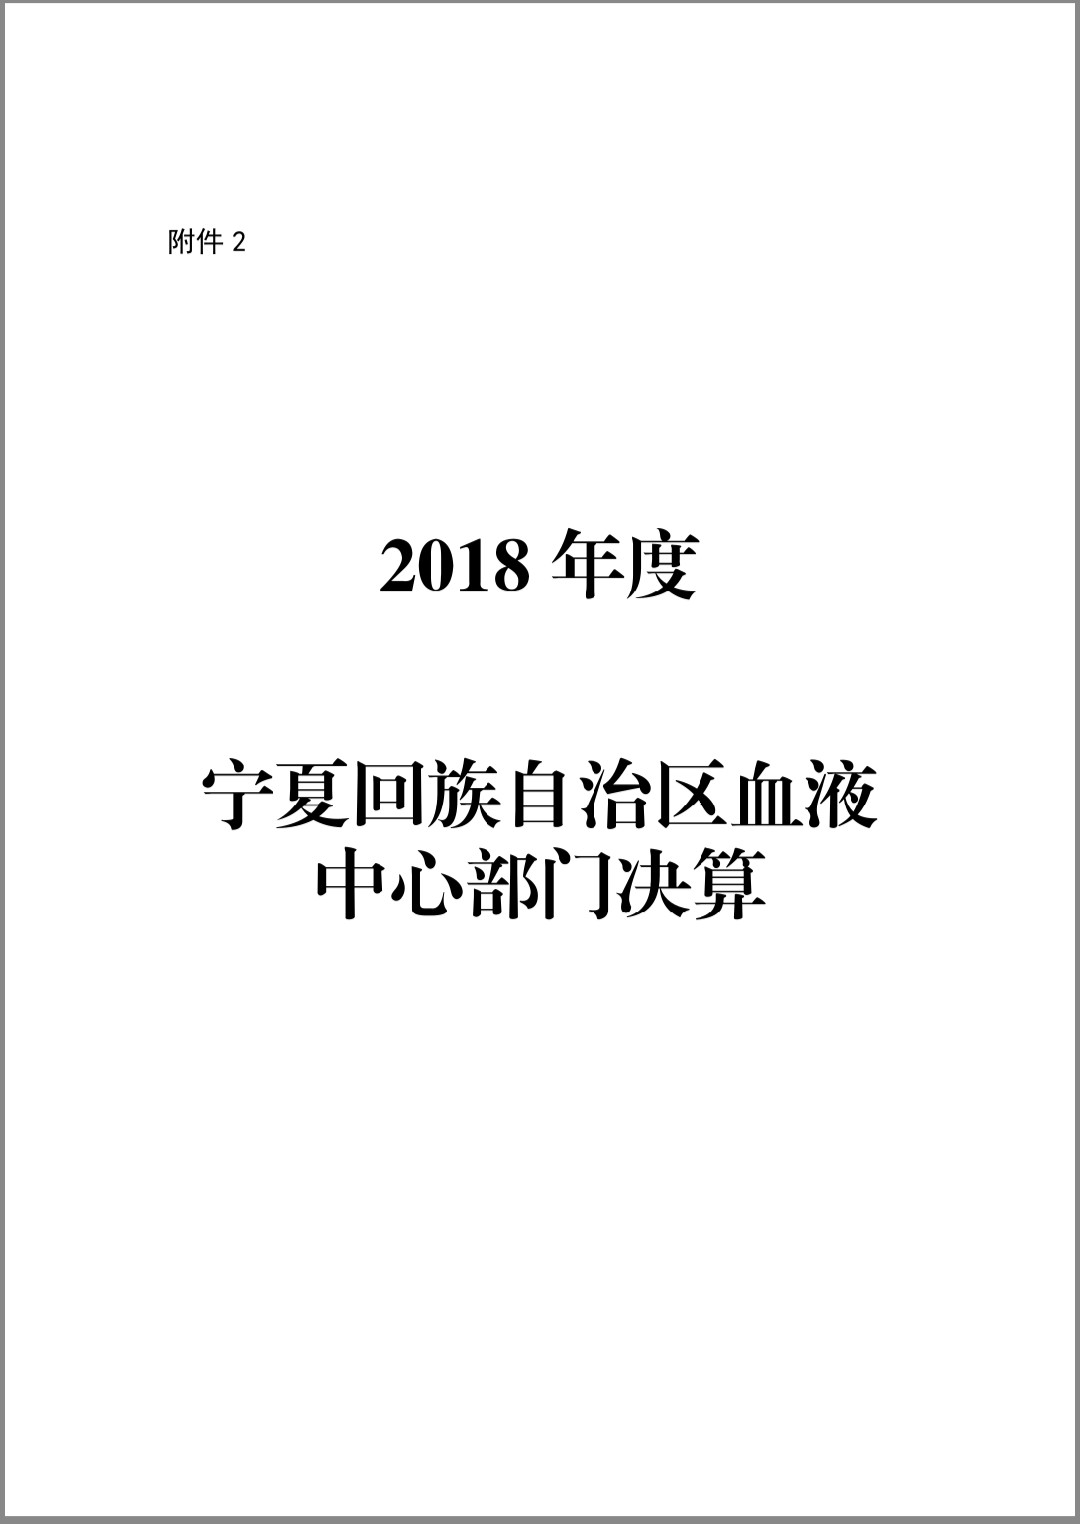 2018年度宁夏回族自治区血液中心部门决算(图1)